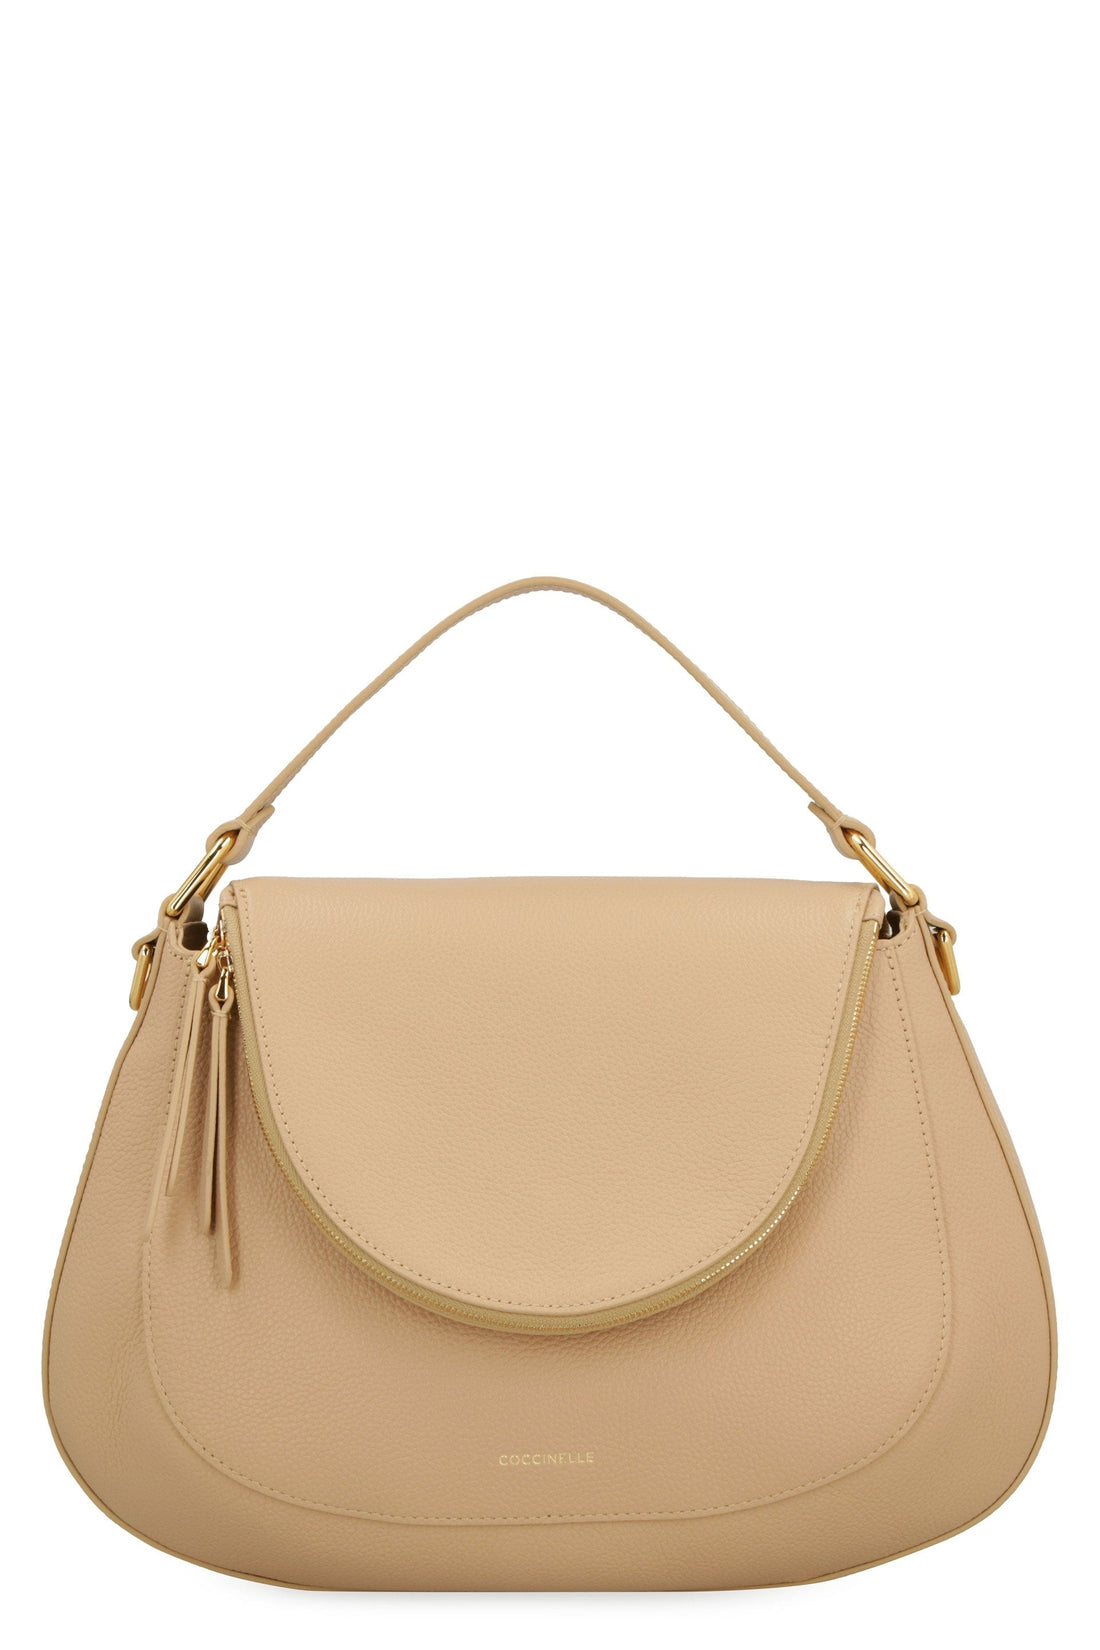 Coccinelle-OUTLET-SALE-Sole leather handbag-ARCHIVIST